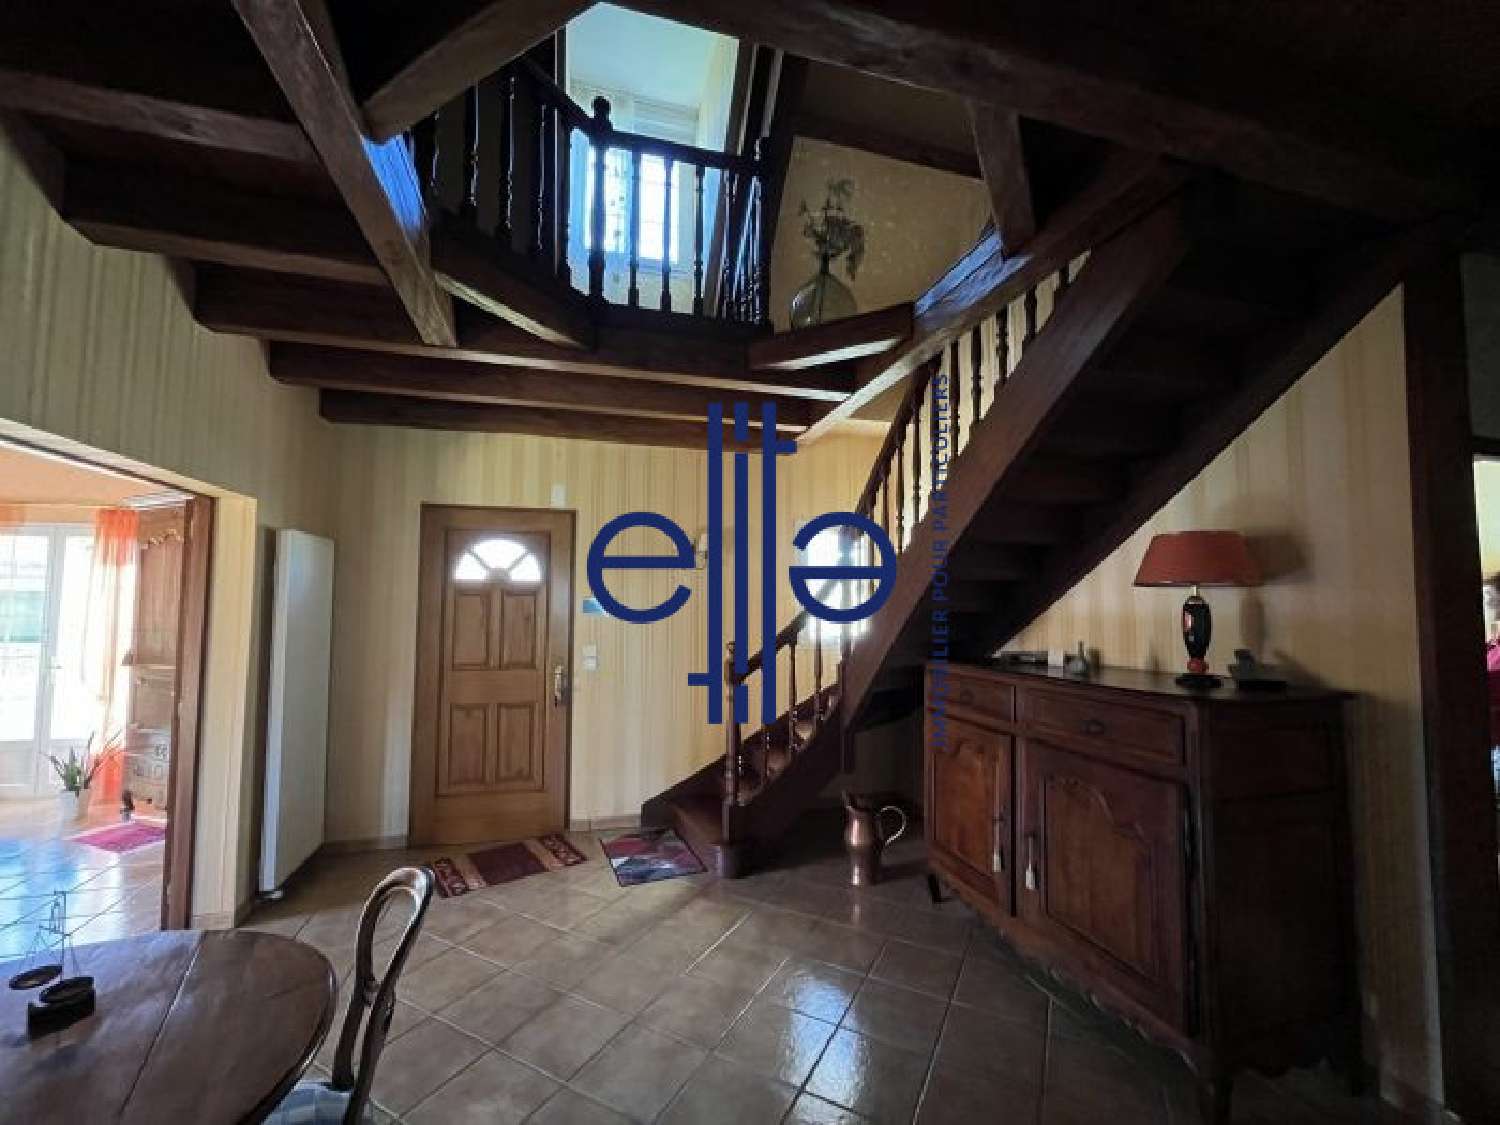  à vendre maison Eyliac Dordogne 8